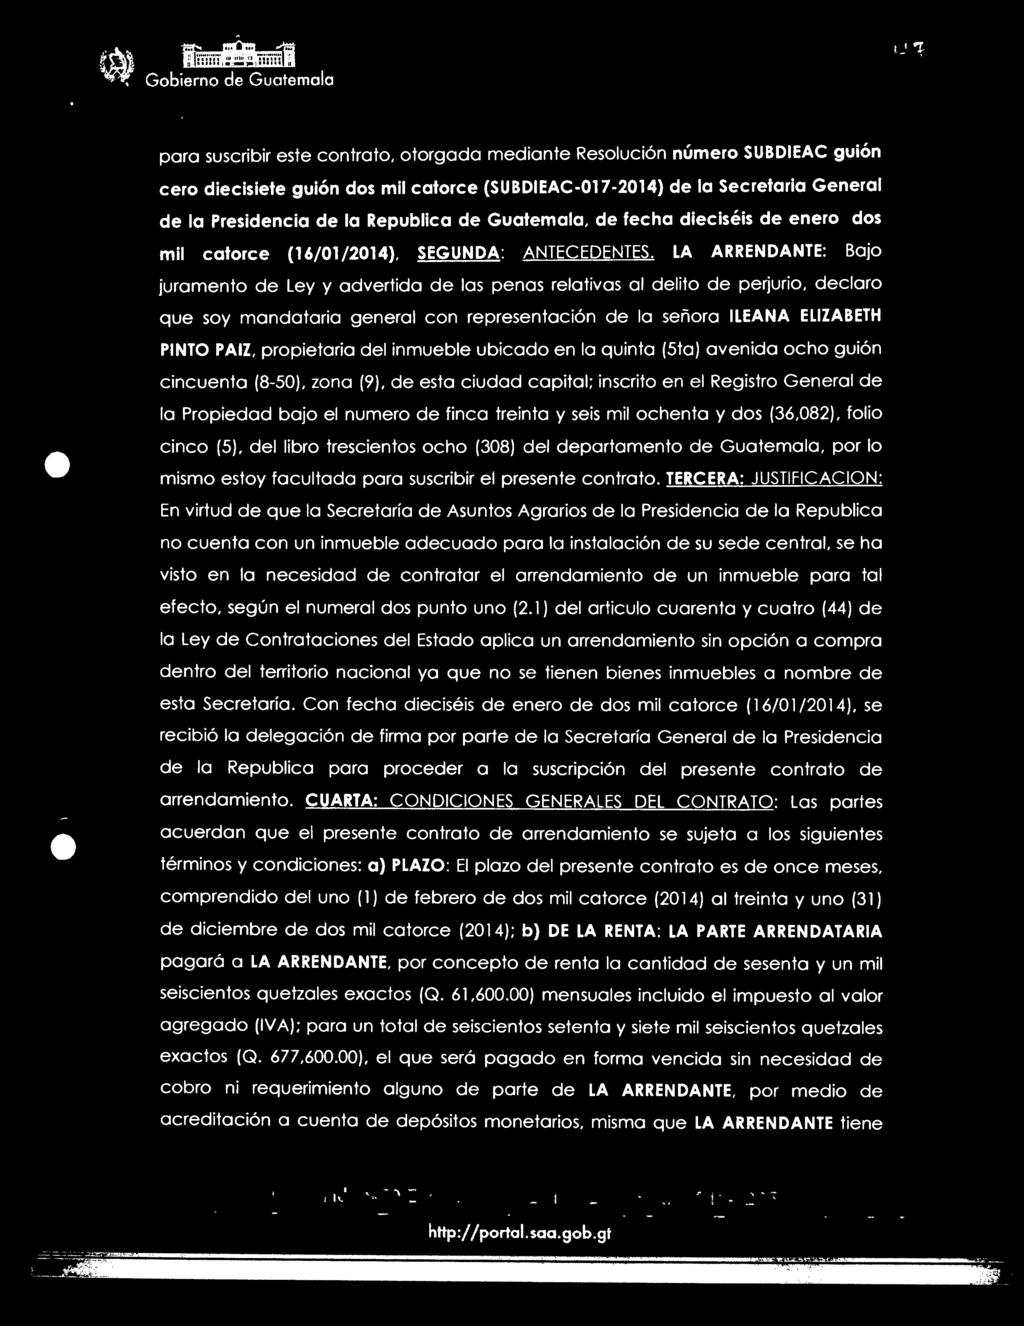 treinta y seis mil ochenta y dos (36,082), folio cinco (5), del libro trescientos ocho (308) del departamento de Guatemala, por lo mismo estoy facultada para suscribir el presente contrato.